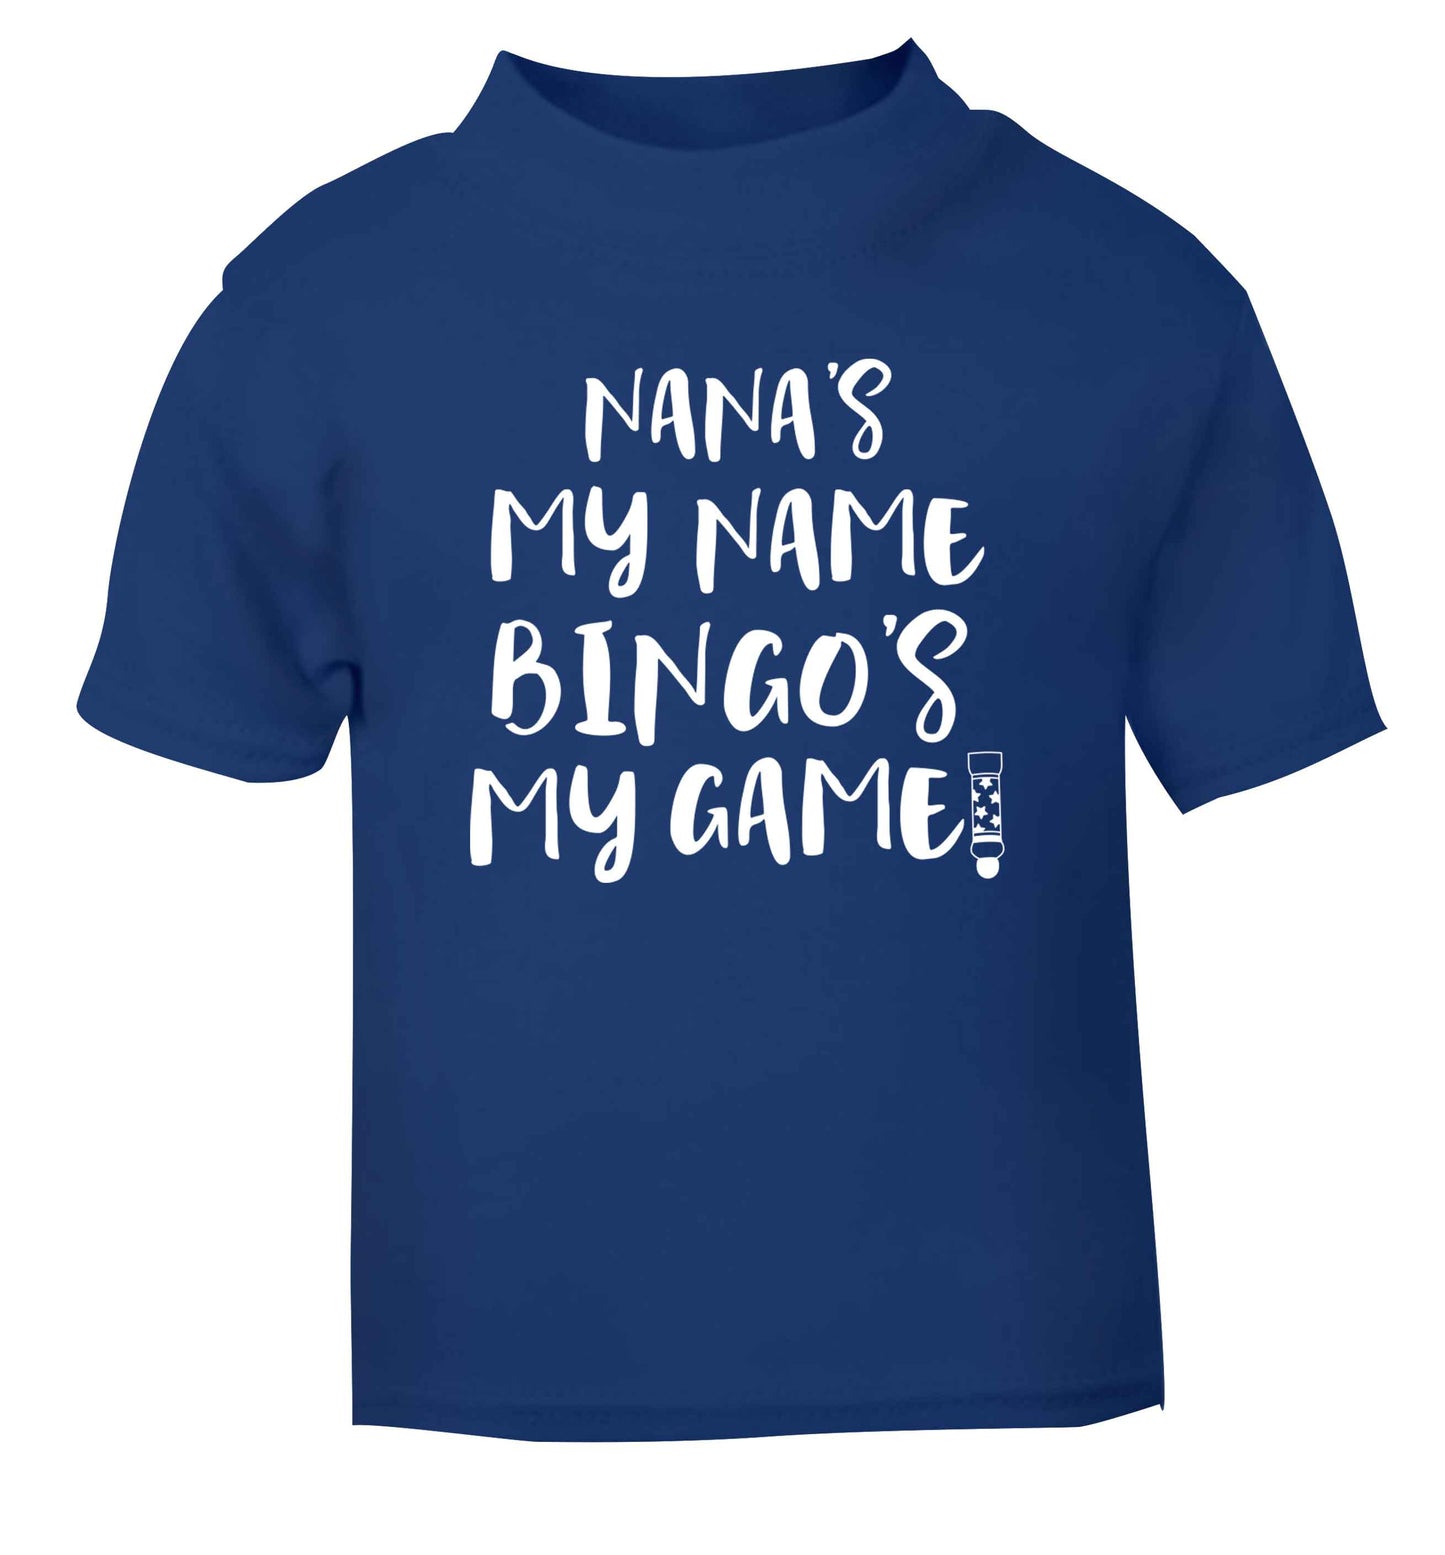 Nana's my name bingo's my game! blue Baby Toddler Tshirt 2 Years